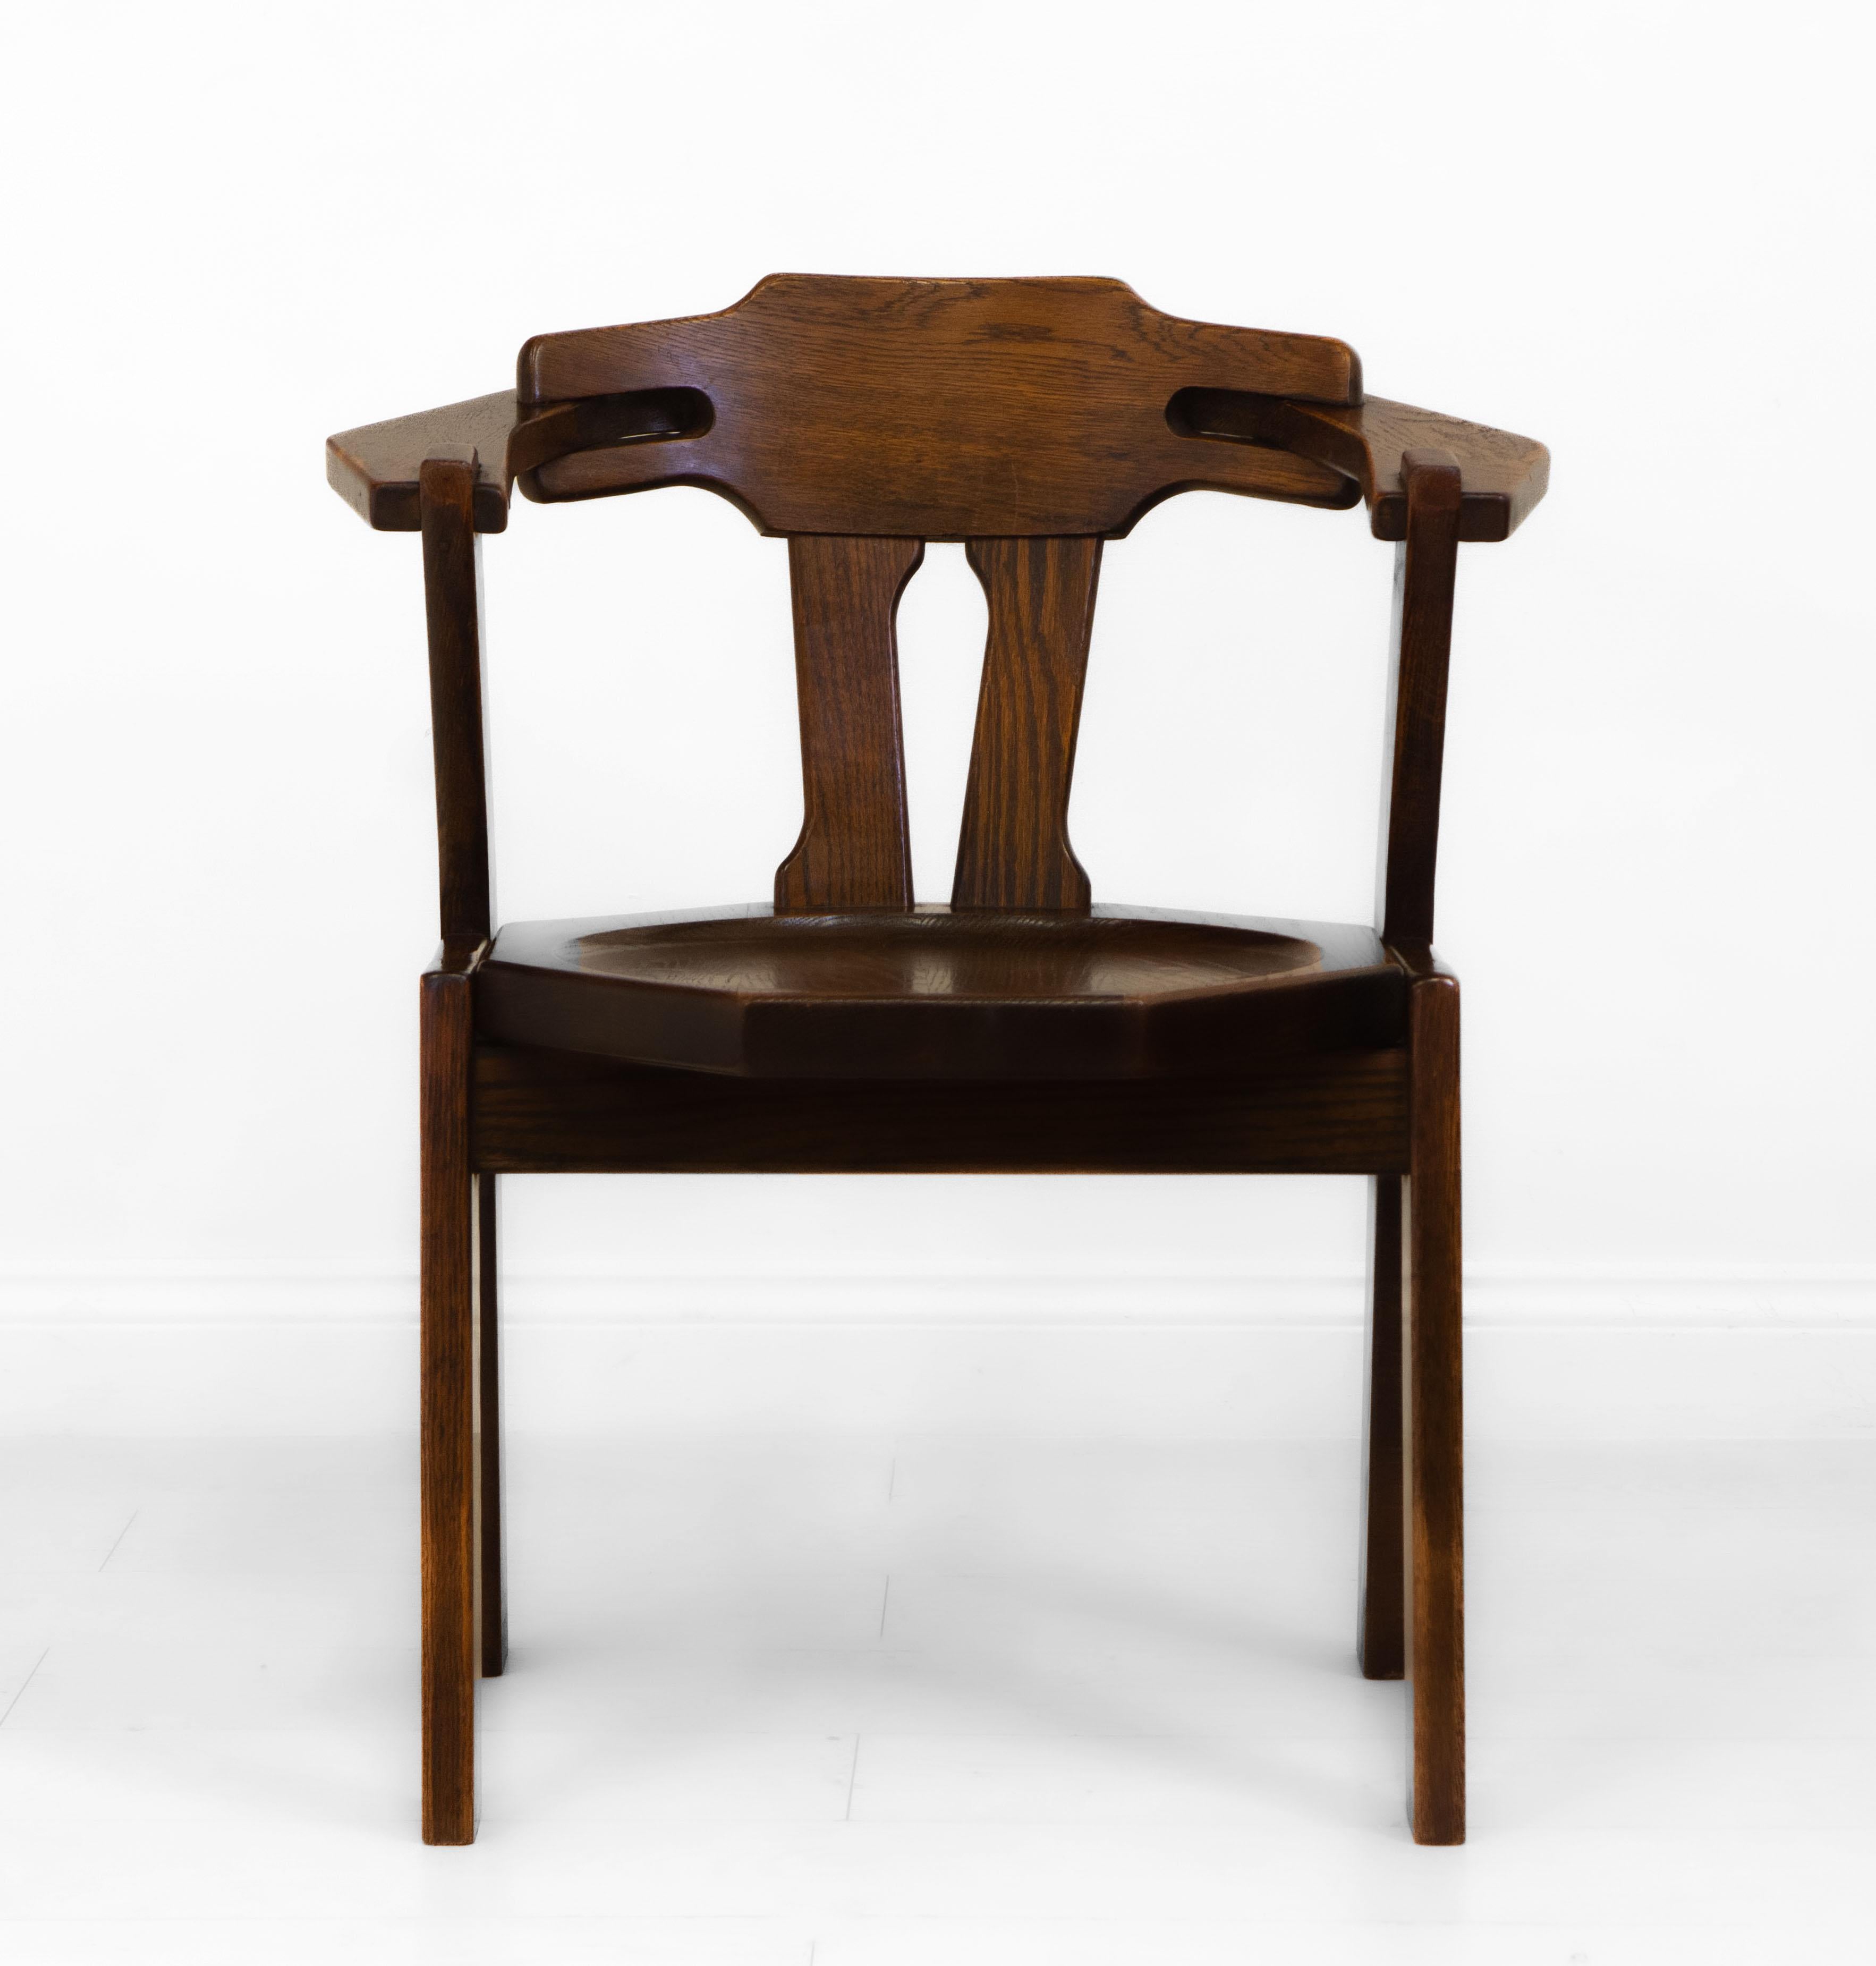 Chaise d'appoint/de bureau en chêne au design brutaliste. Pays Bas - vers 1970.

Cette chaise élégante est fabriquée en chêne massif et en bon état d'origine. Il a été nettoyé et ciré. Les accoudoirs ont perdu un peu de leur couleur à cause de